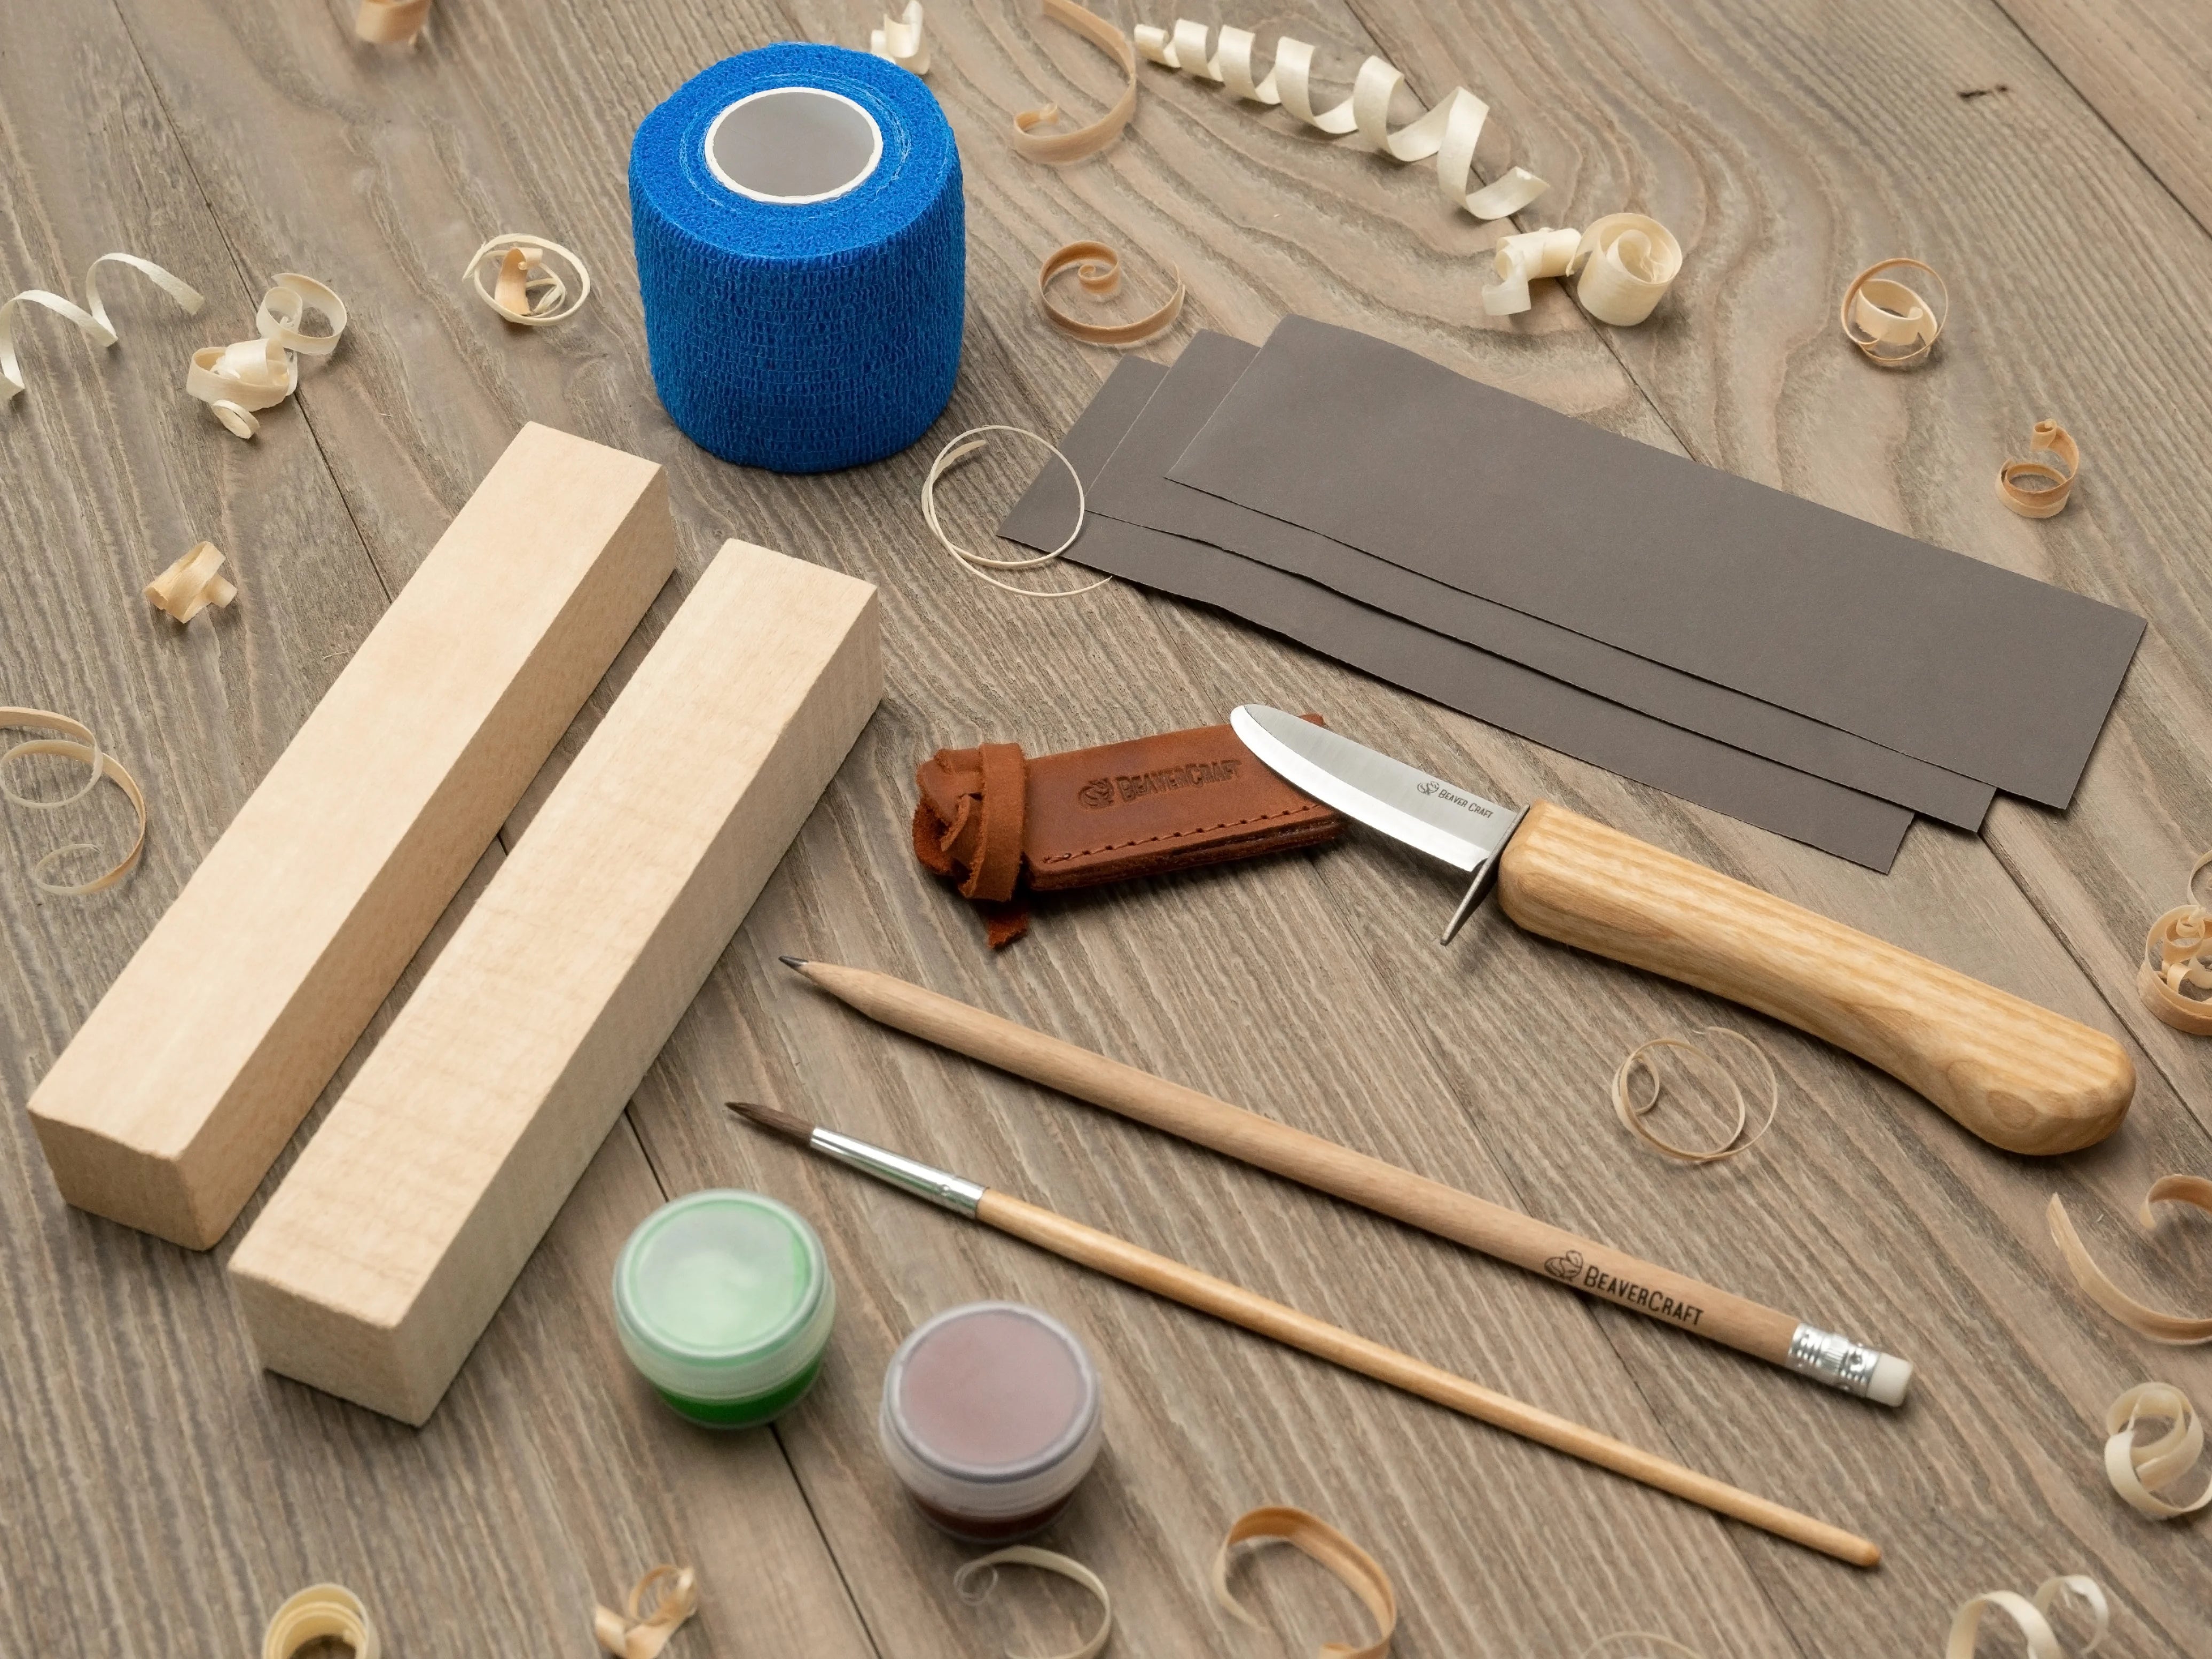 BeaverCraft Wood Carving Kit for Beginners New in Box Made in Ukraine NIB  Beaver